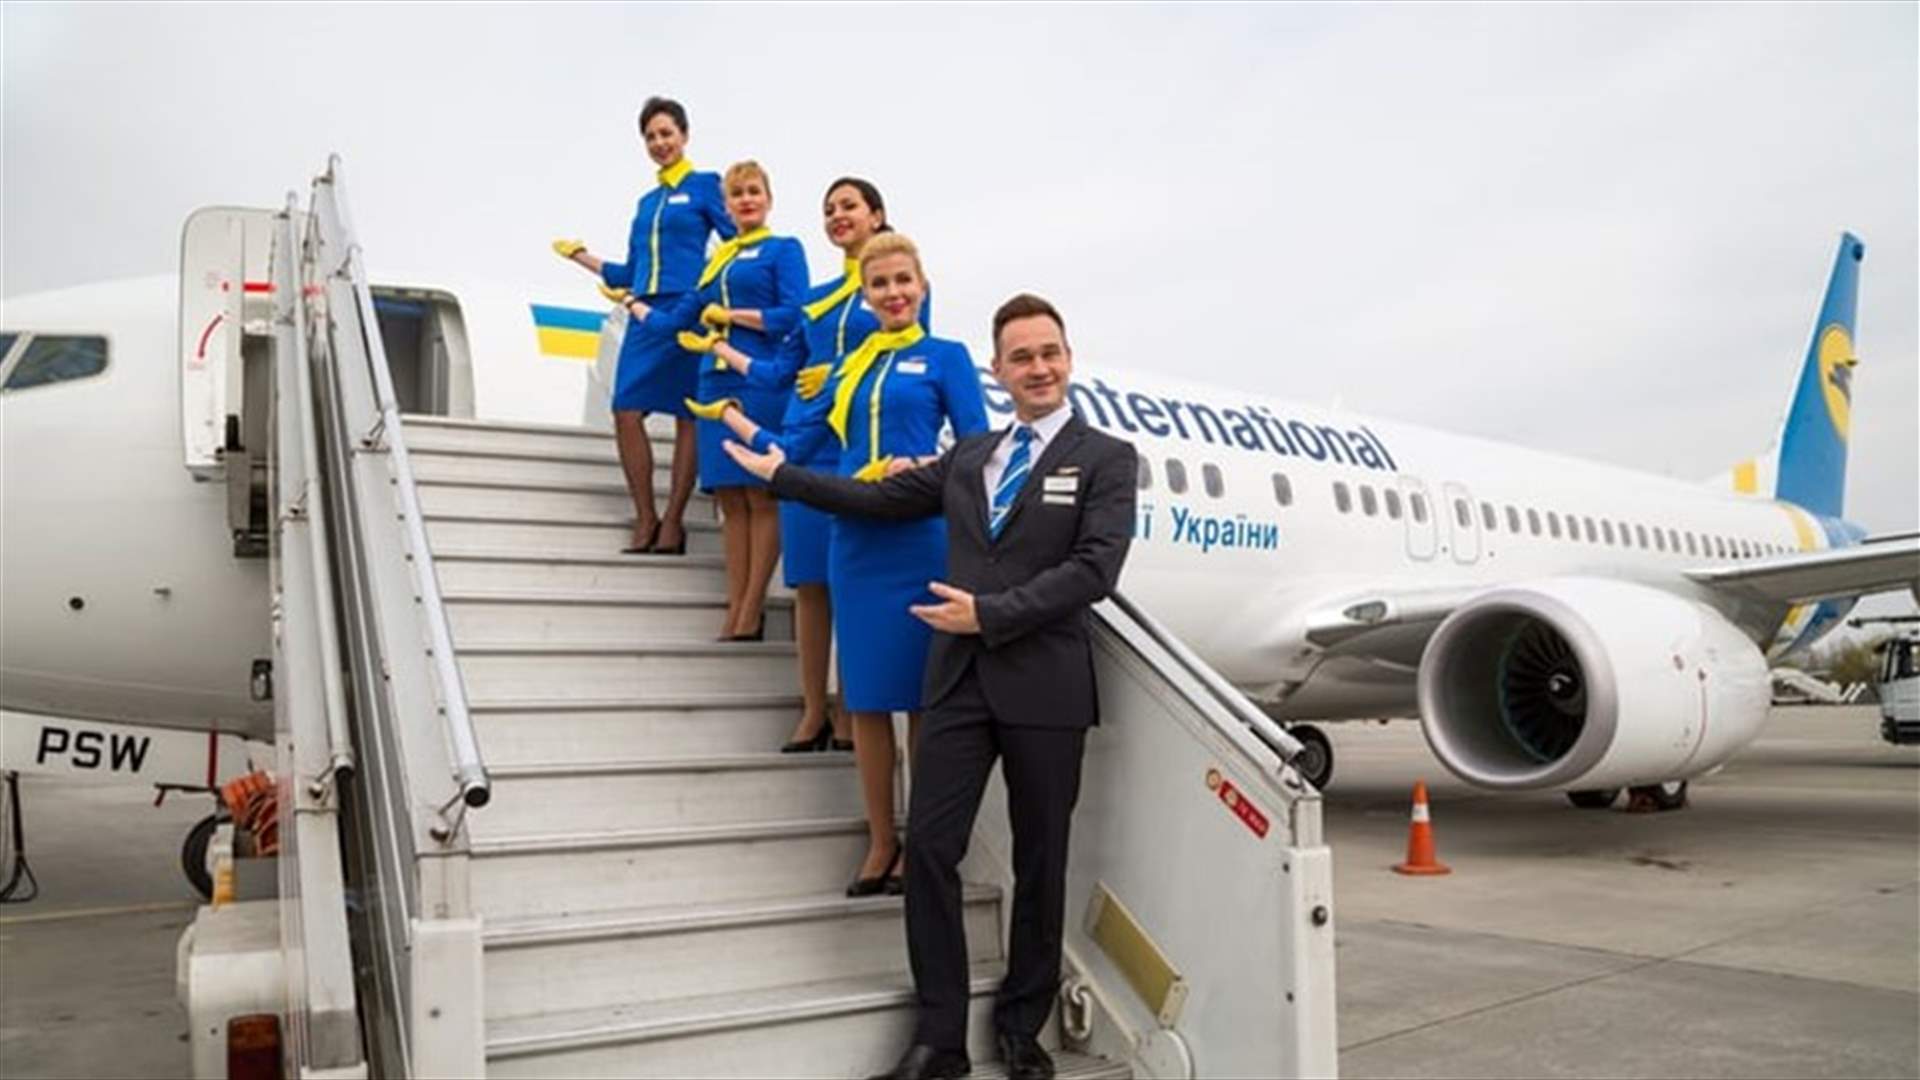 السويد تدرّب طاقم طيران على العمل بالمستشفيات لمحاربة كورونا